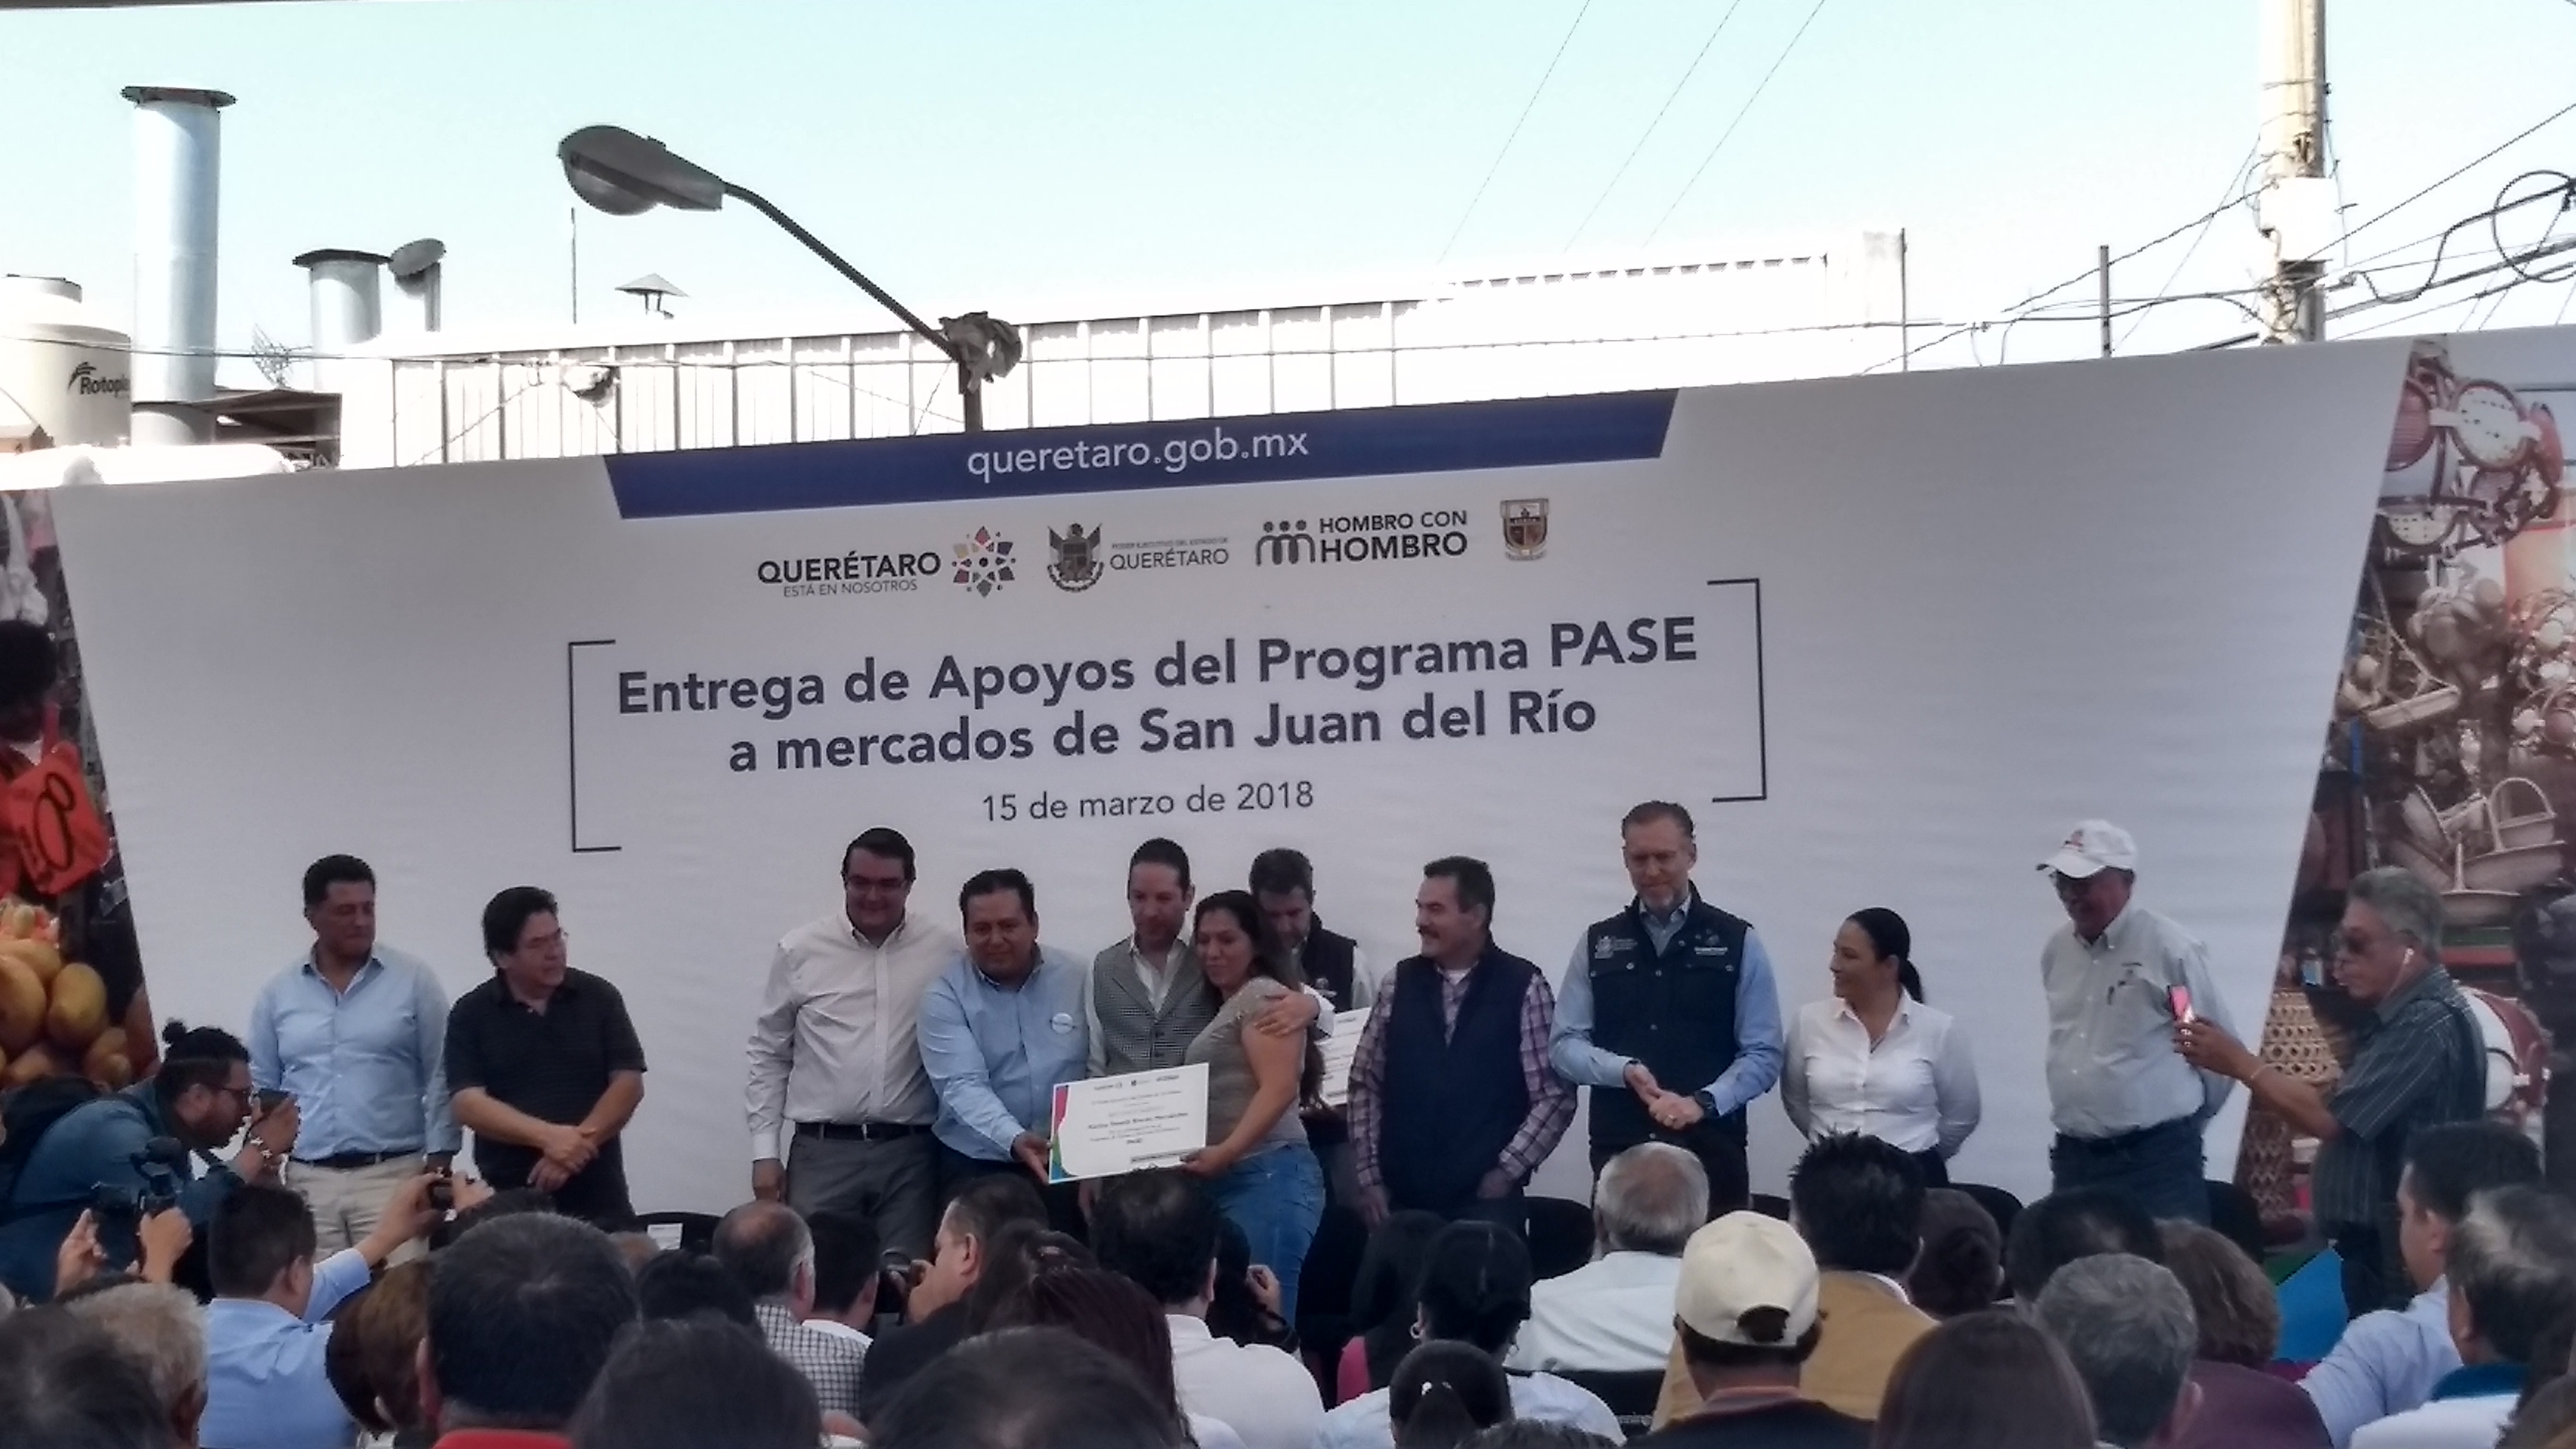  Pancho DomA�nguez entrega apoyo para mercados de San Juan del RA�o